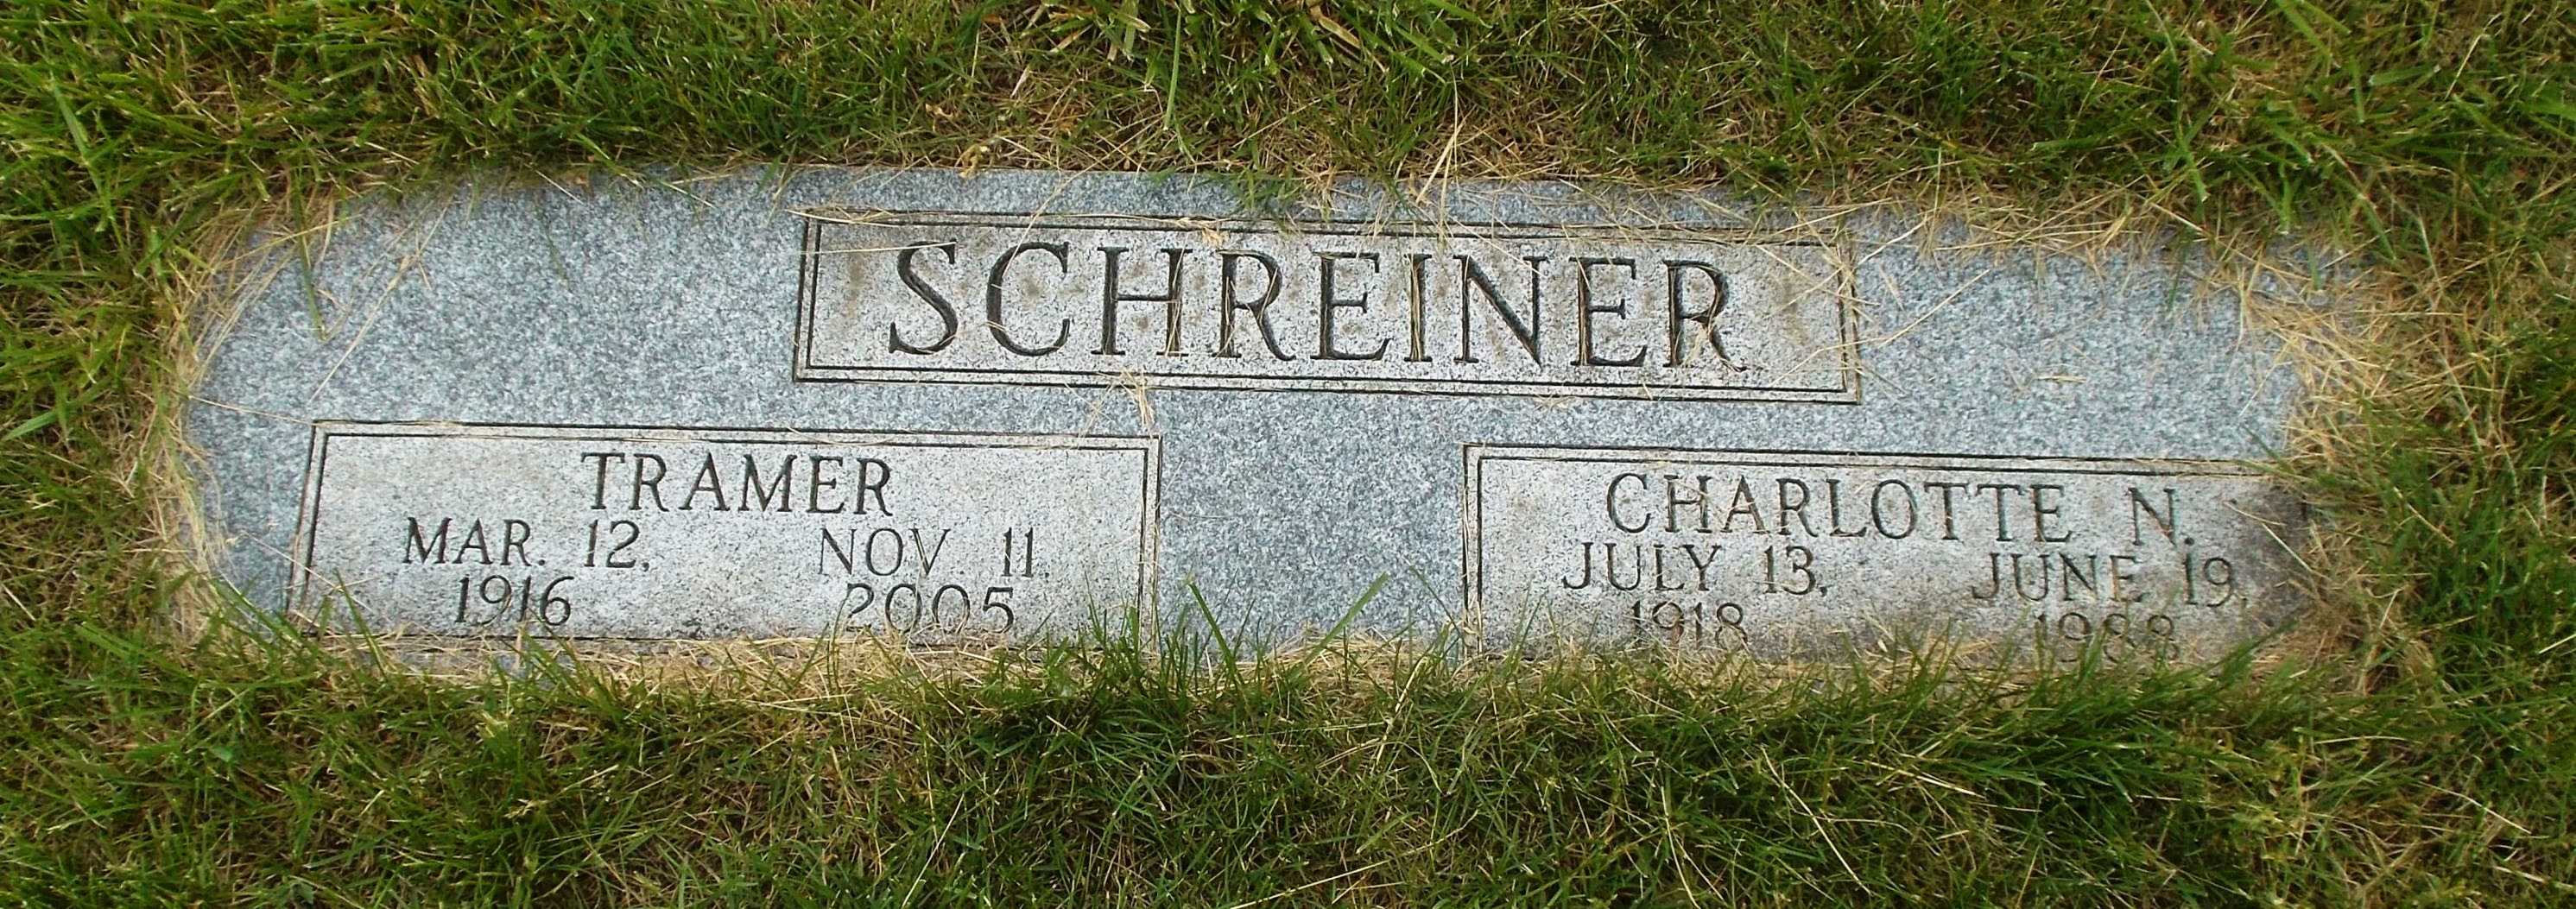 Charlotte N Schreiner